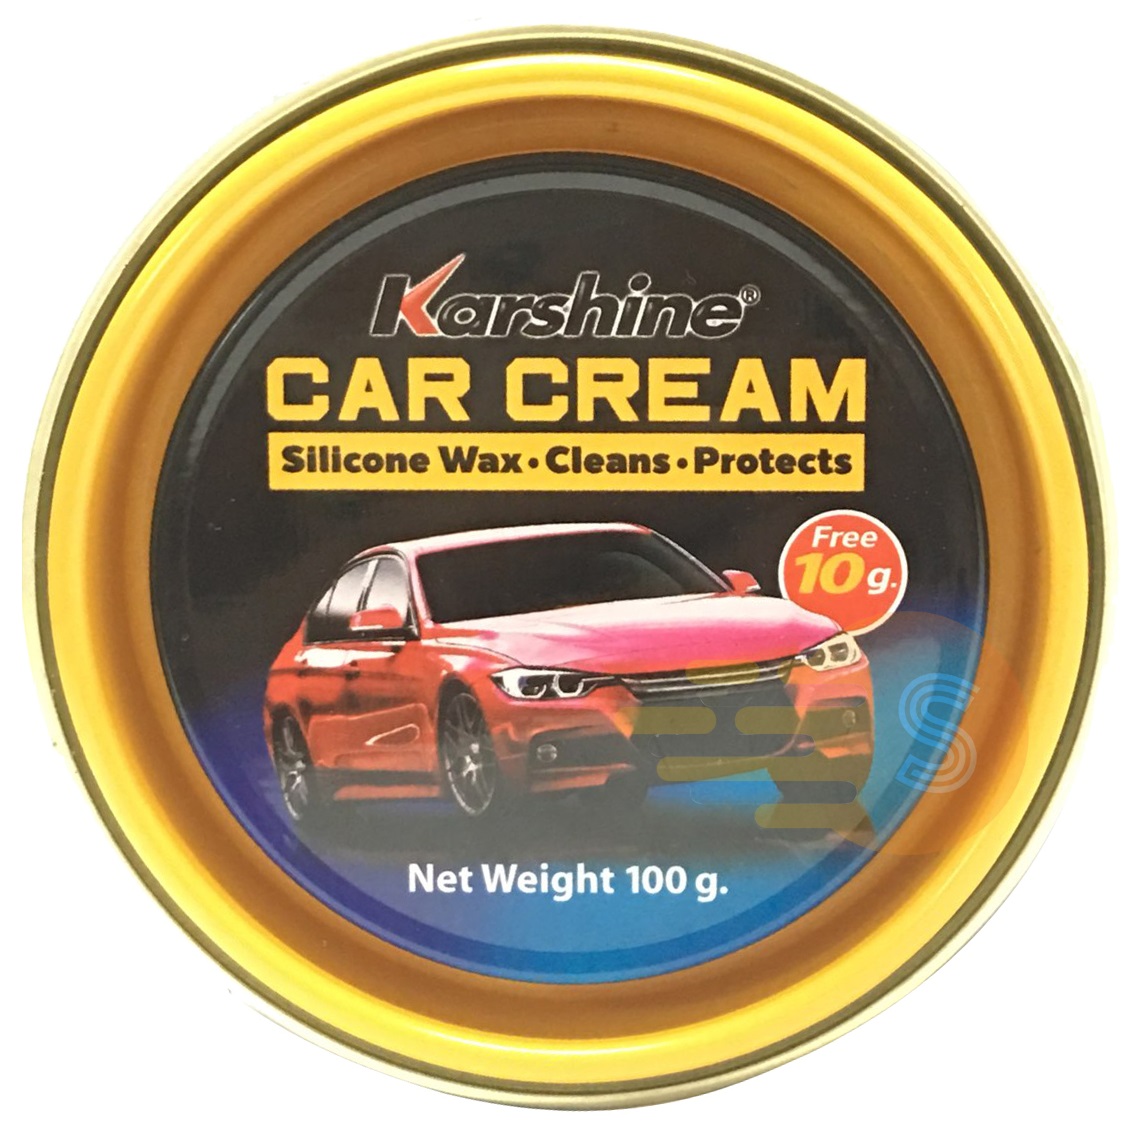 Kem đánh bóng sơn xe ô tô, xe máy (Car Cream) Karshine 110g KA-CC110 - Tốc Độ 247, Phục hồi độ sáng màu sơn xe, xóa vết xước nhỏ, phục hồi màu sơn xe